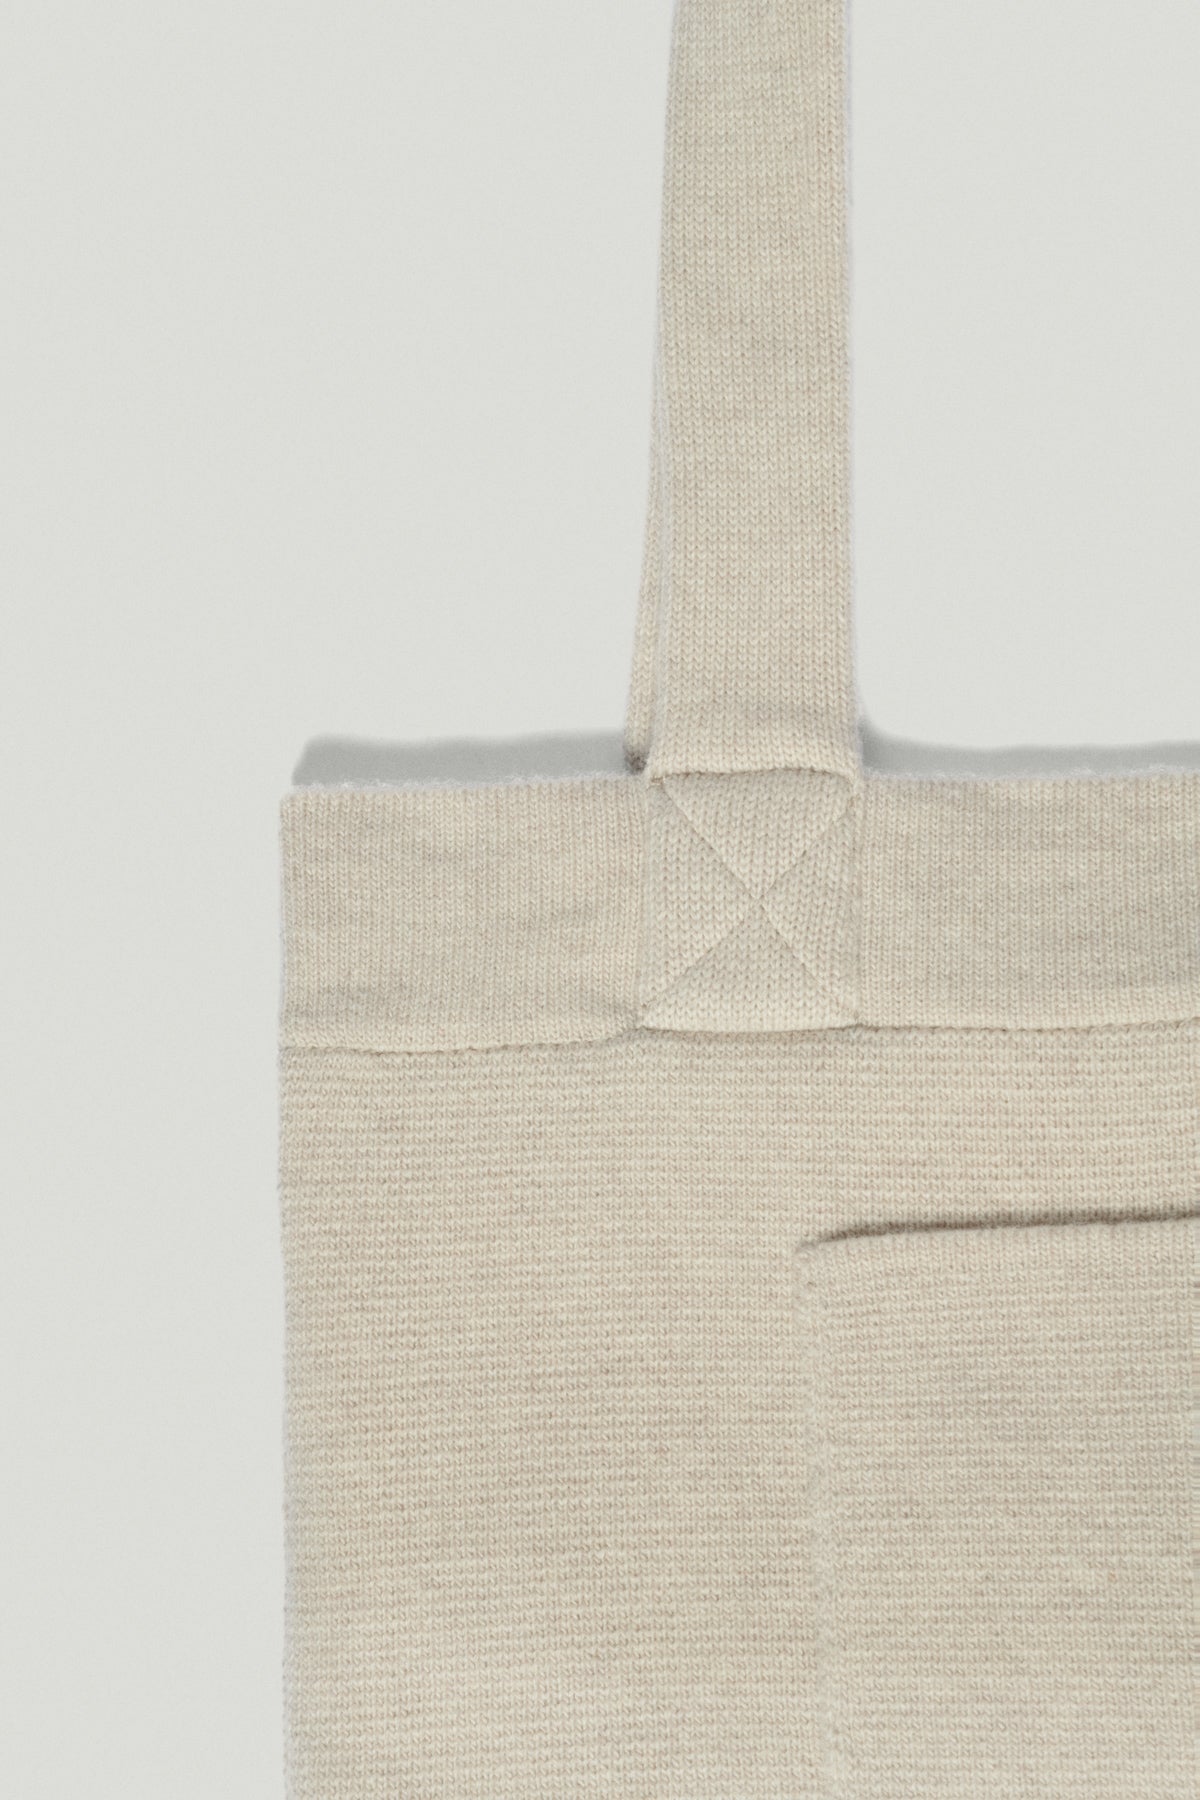 Ecru | The Knit Tote Bag